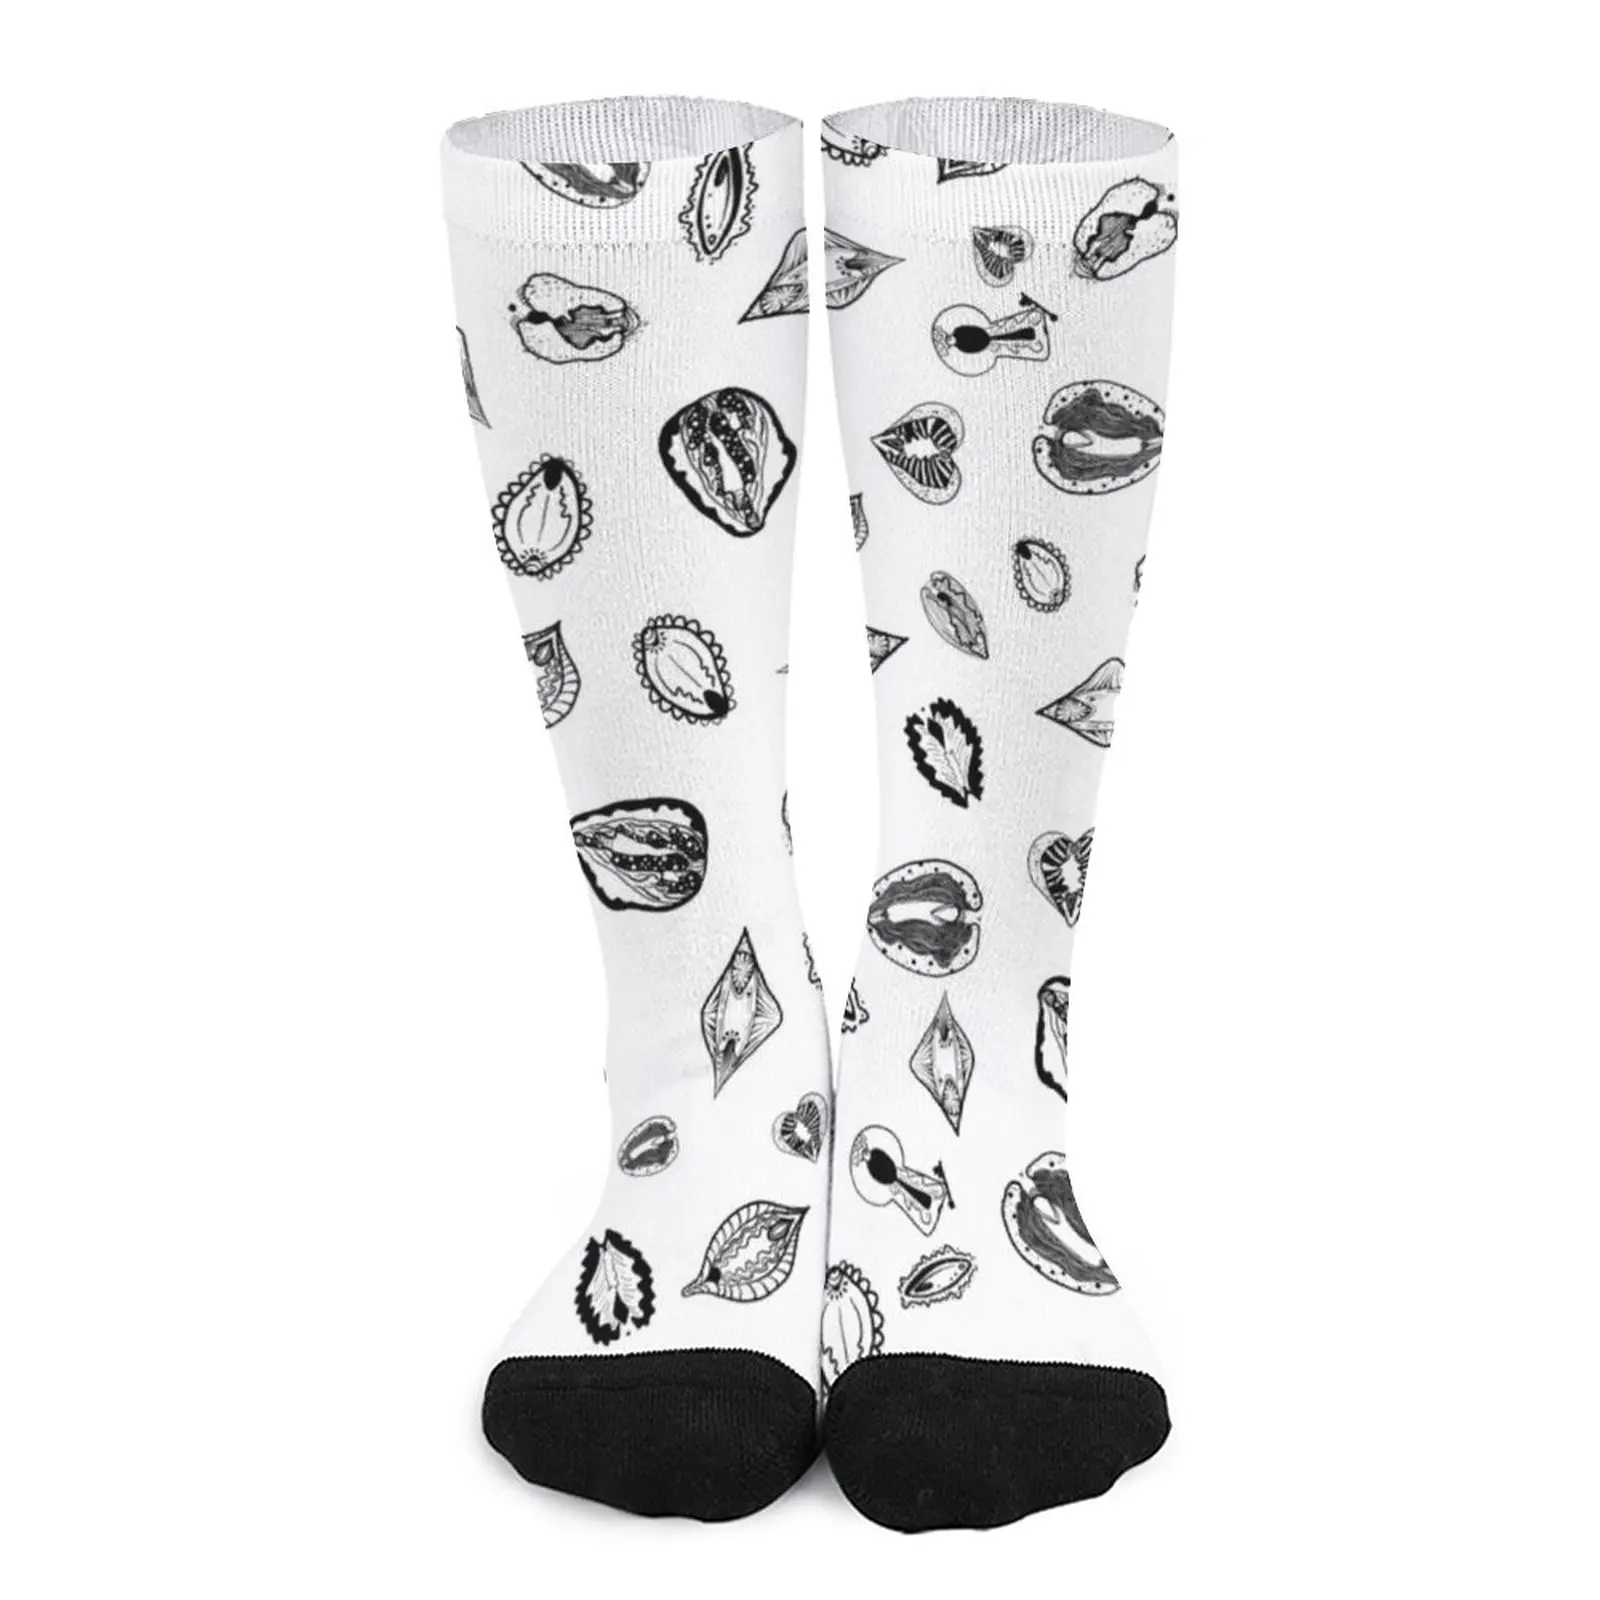 Vulva diversity Socks designer socks Wholesale basket ball Women's warm socks